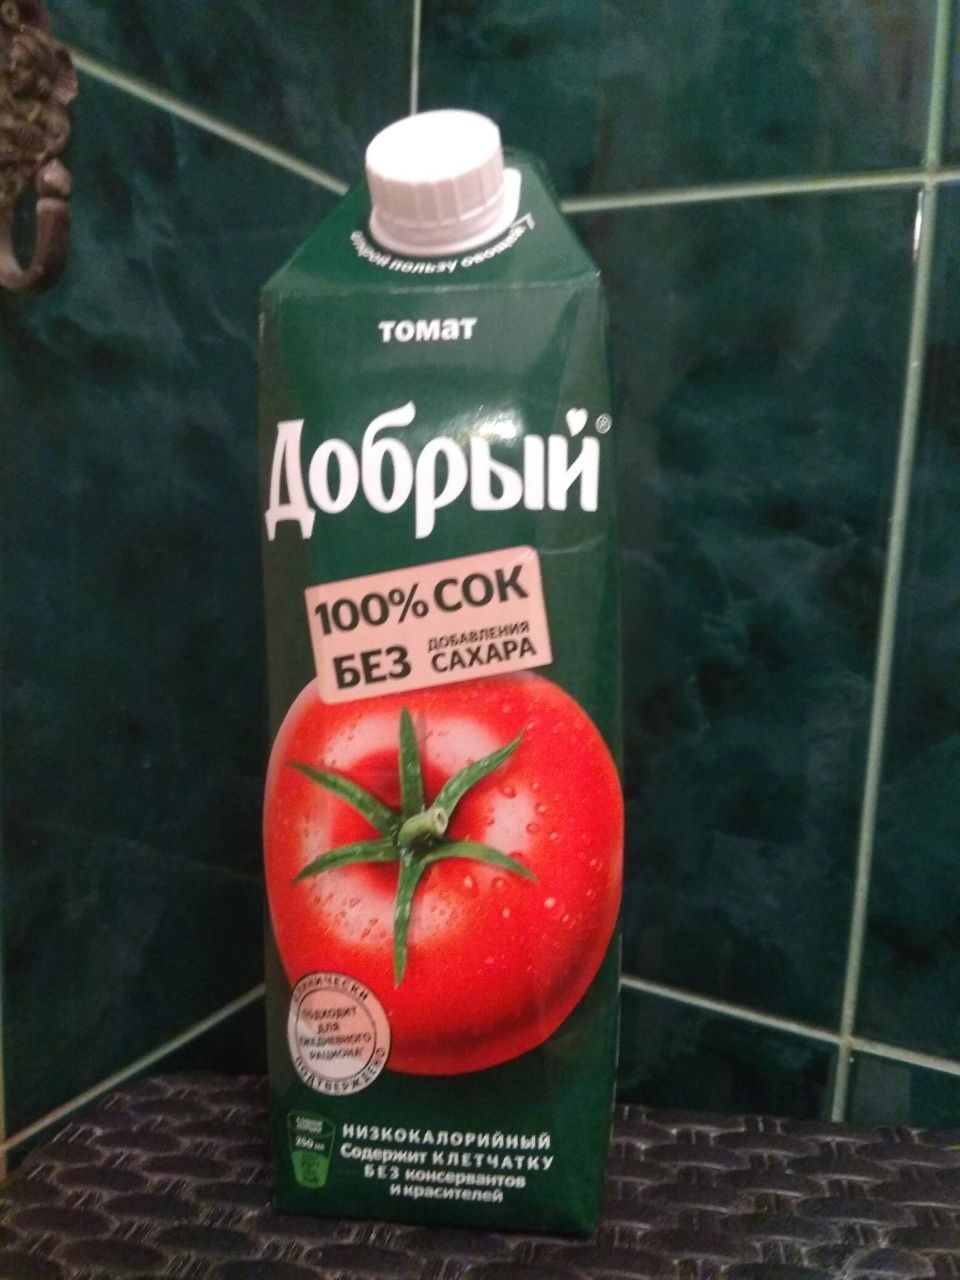 сок добрый томатный - Сок, который отлично отбивает аппетит